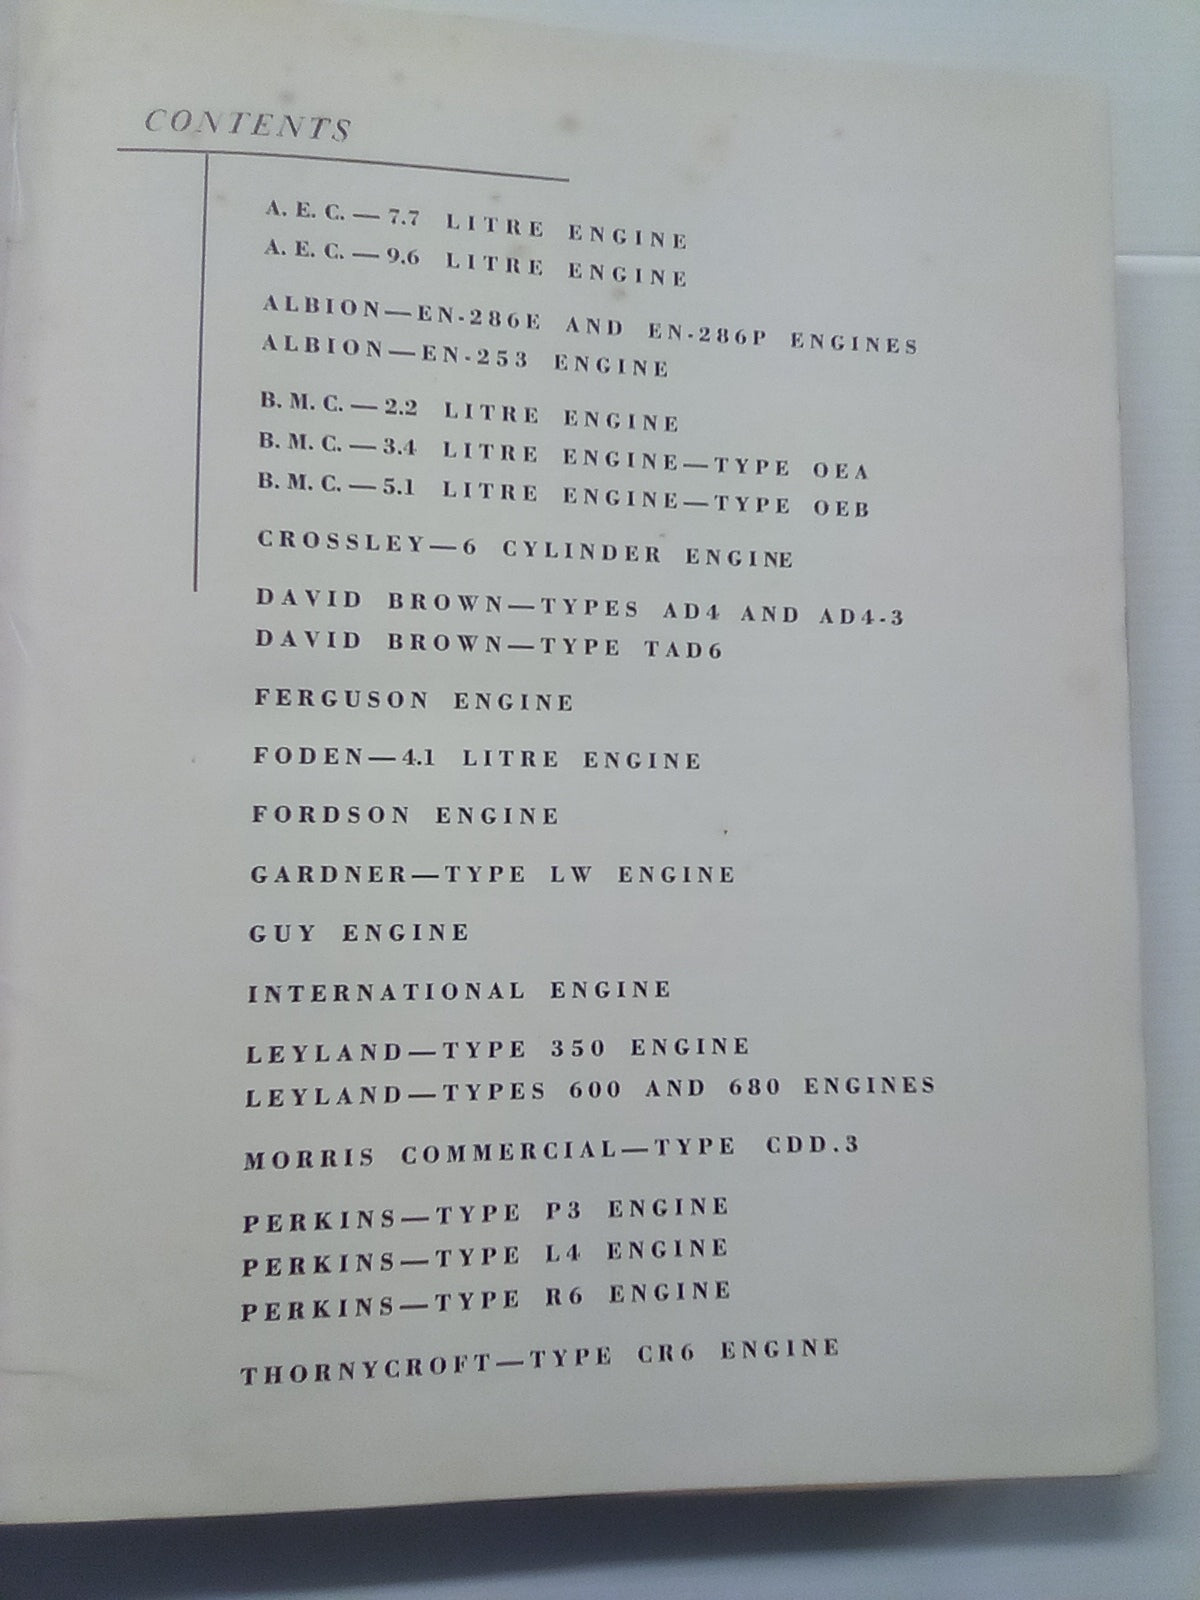 Diesel Engine Service Manual 1957 - Various Engines